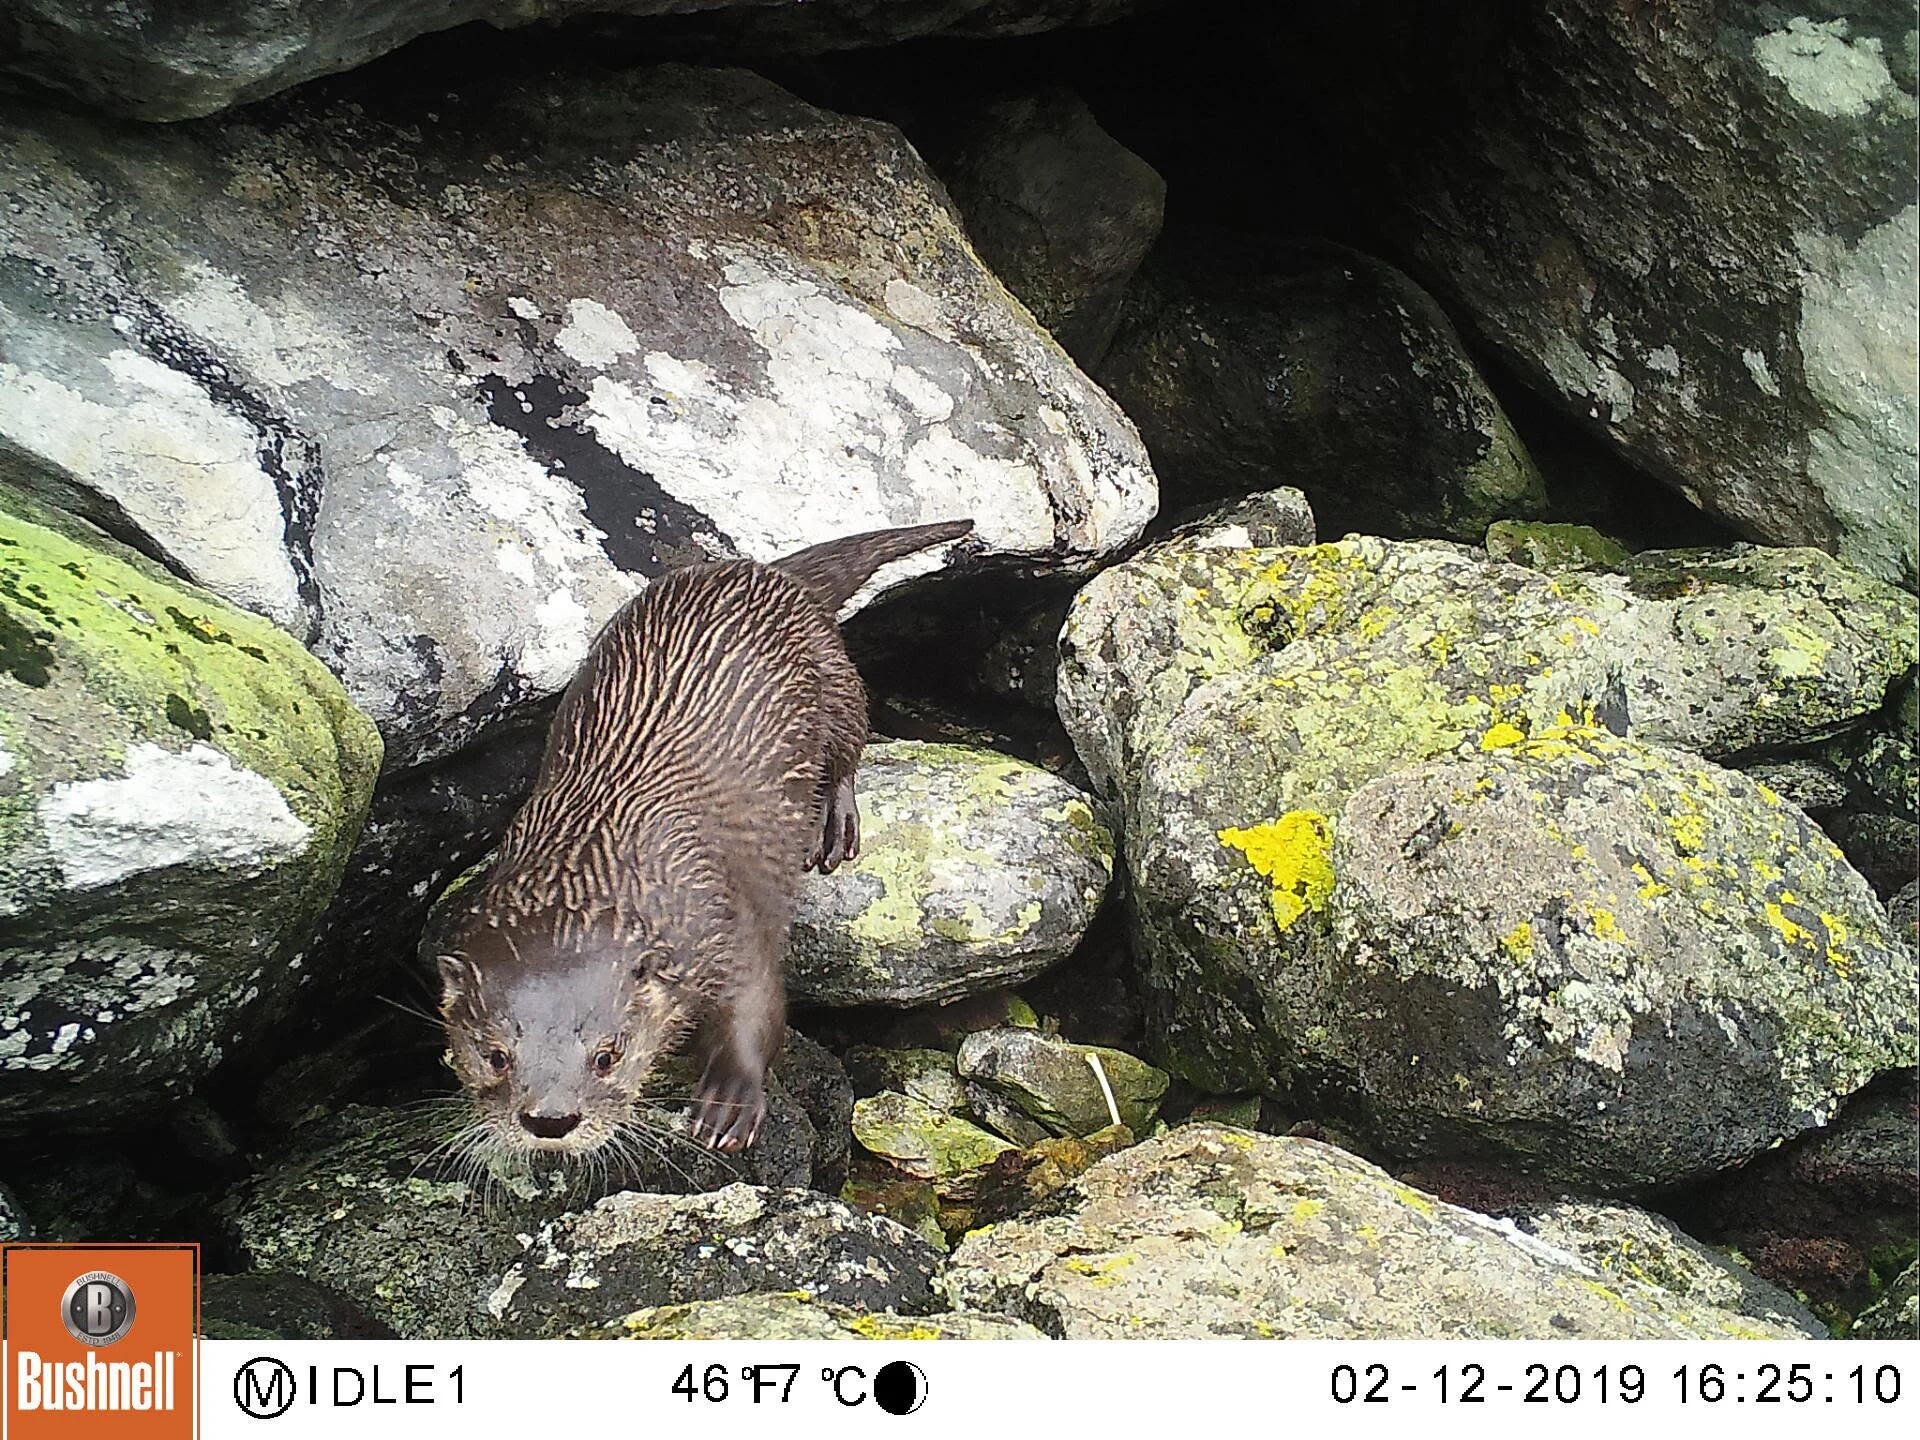 Una de las imágenes captadas por las "cámaras trampa" que permiten observar cómo actúa el huillín, especie en peligro crítico de extinción.